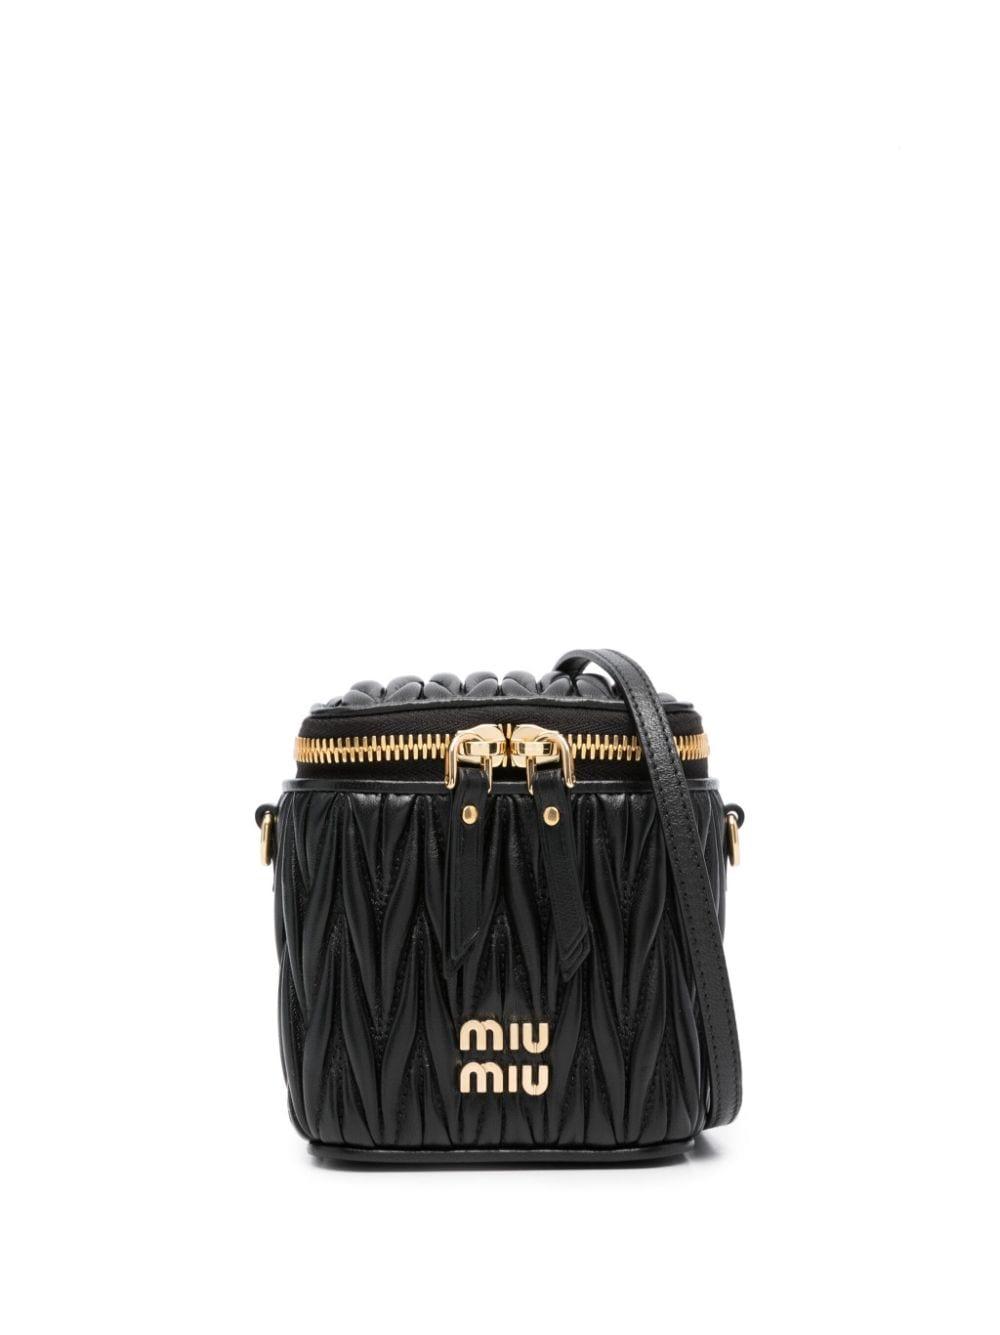 Buy Miu Miu Black Small Matelassé Top Handle Bag in Leather for